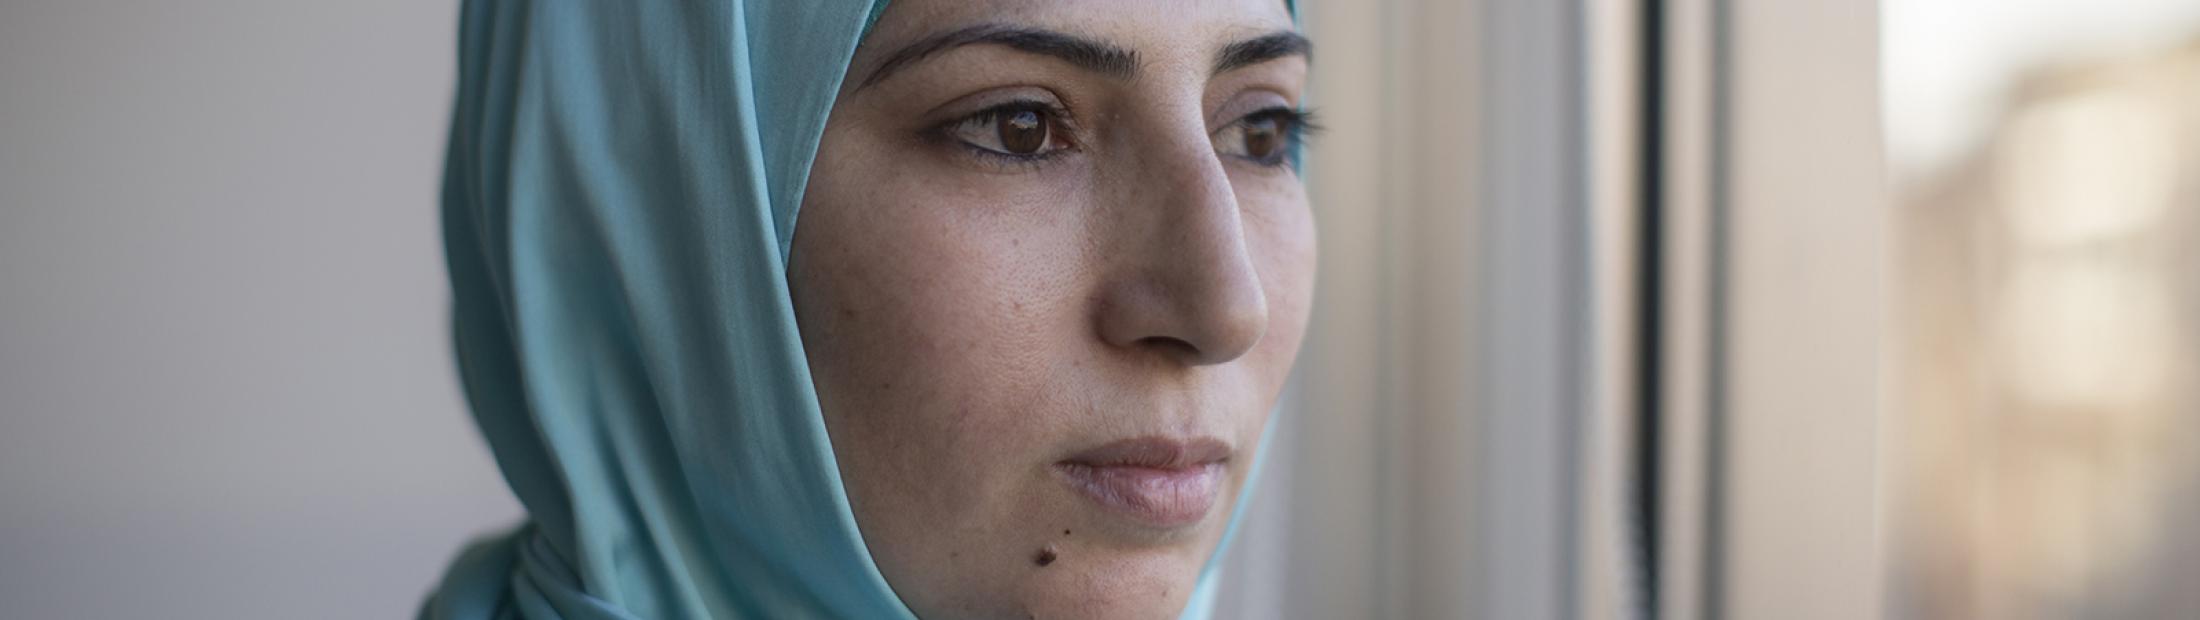 4 mujeres musulmanas forzadas a huir de su país